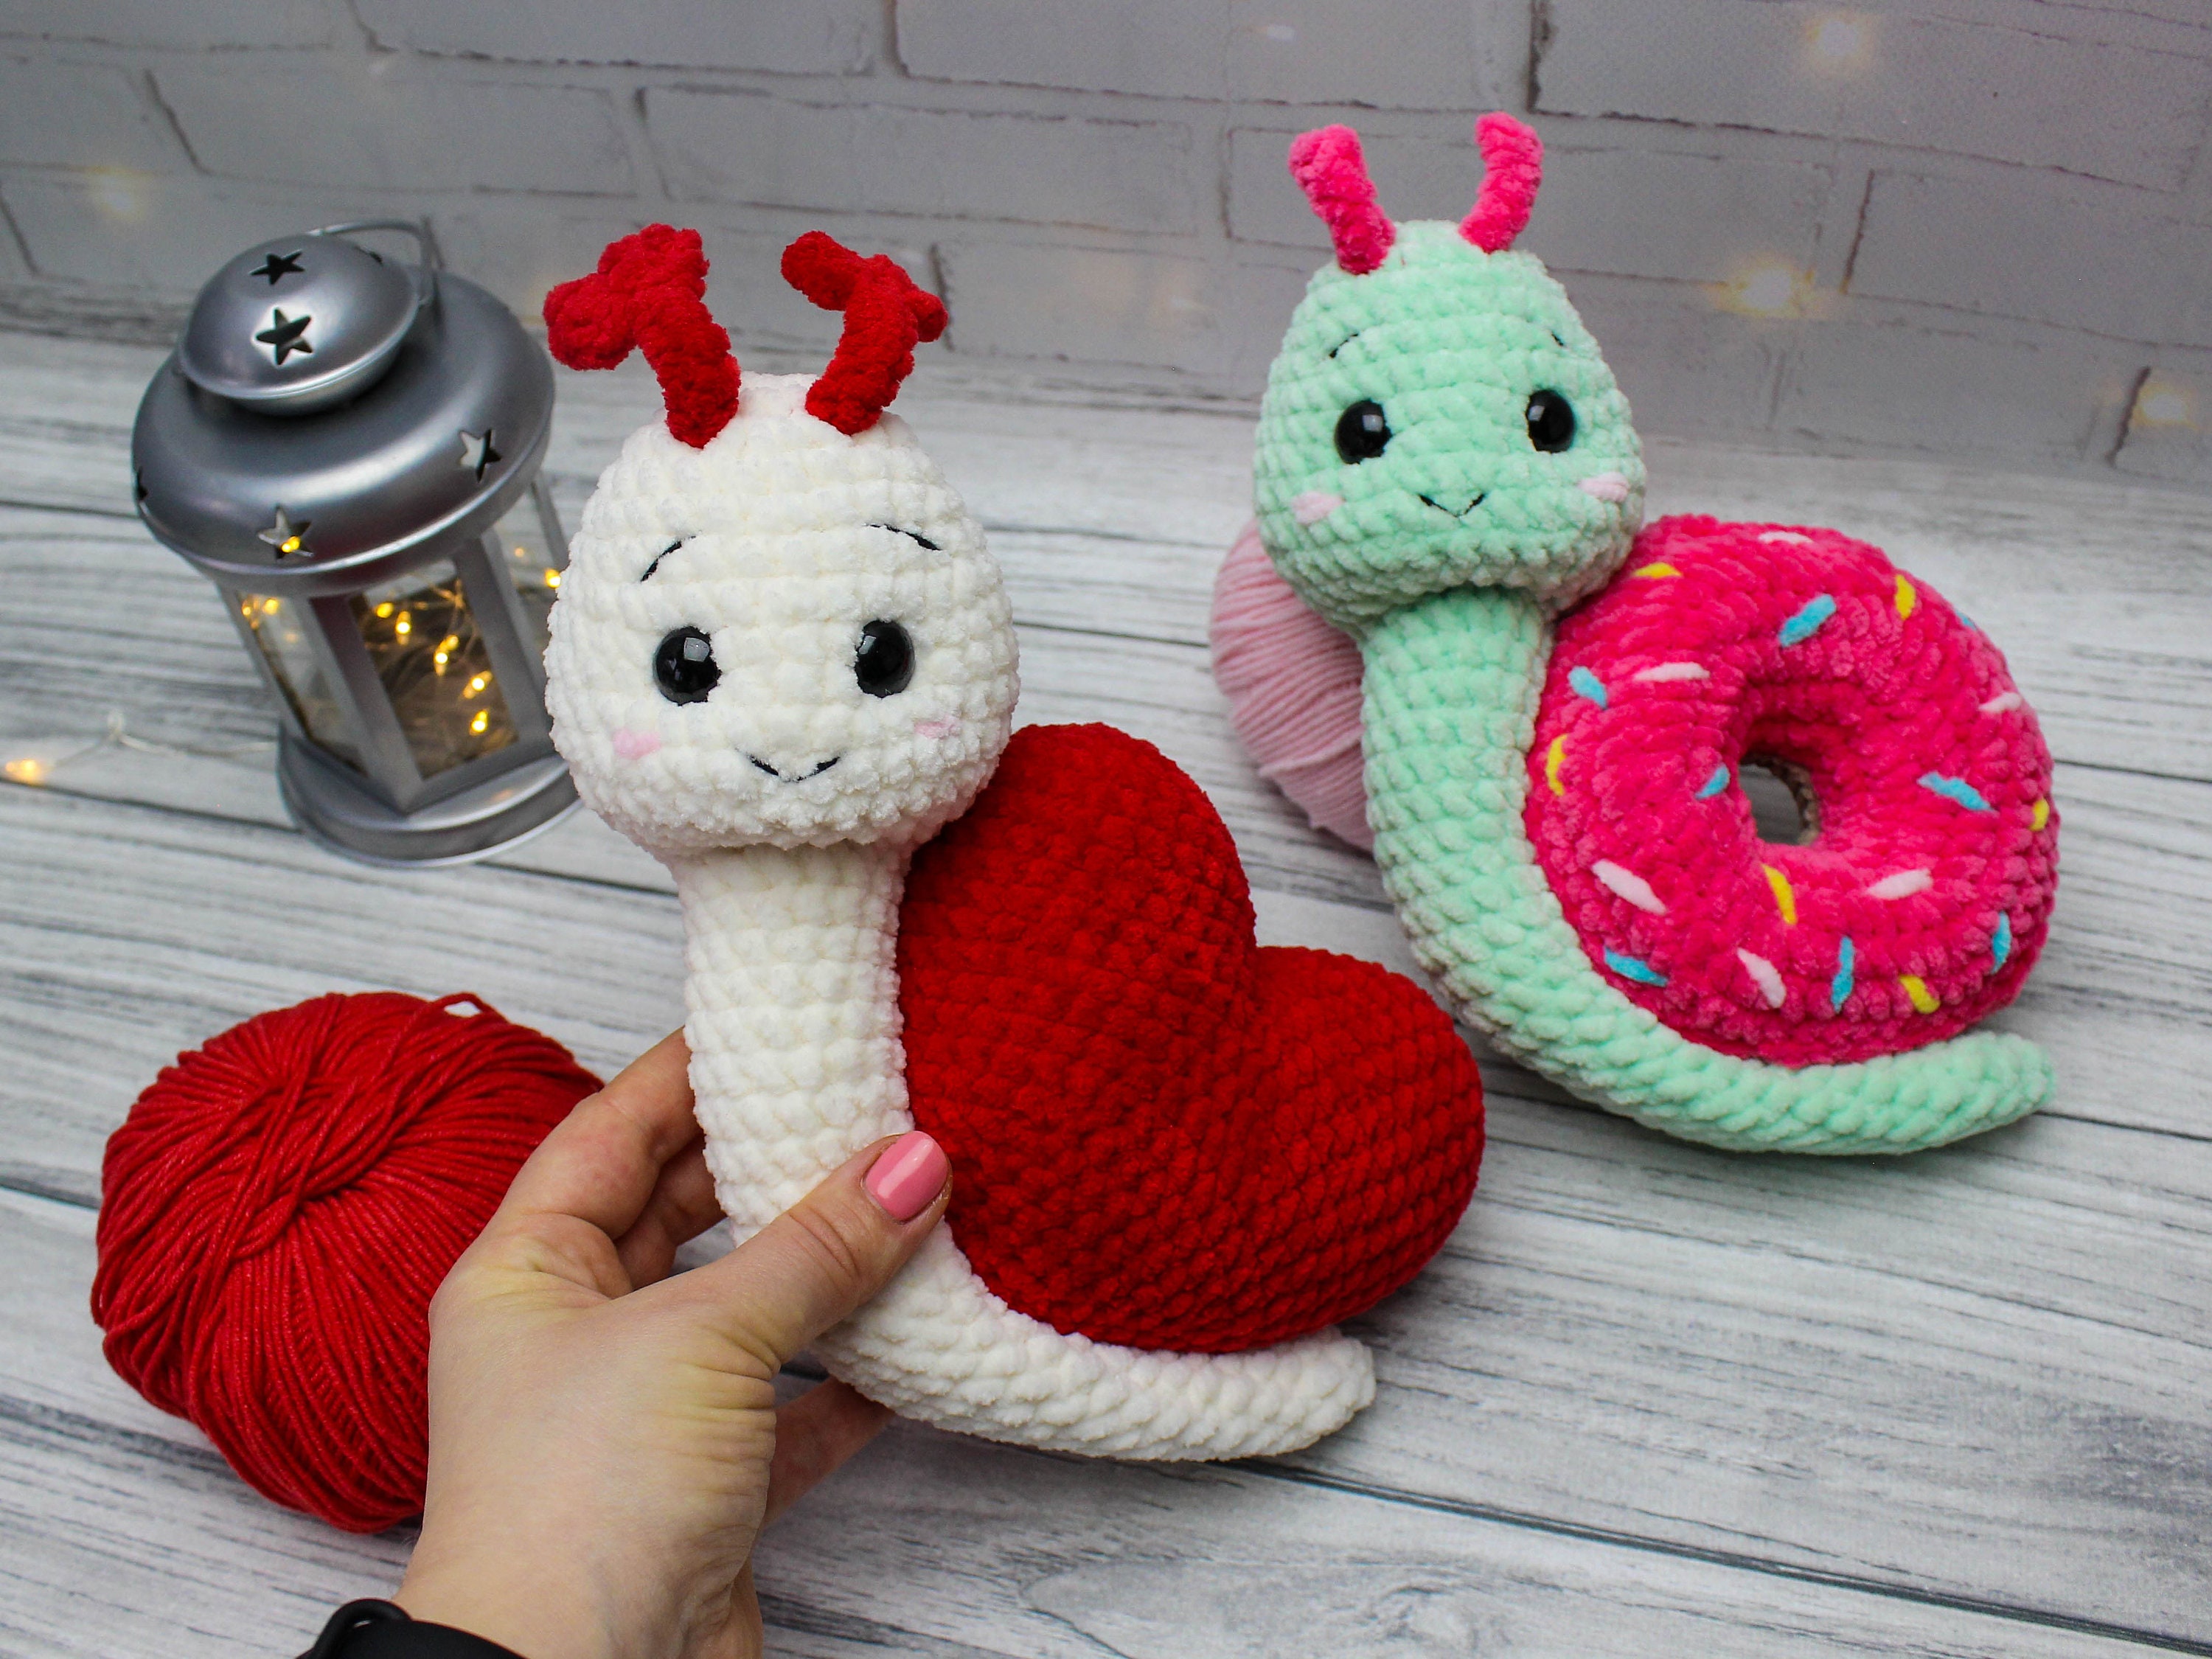 Crochet Plush Snail